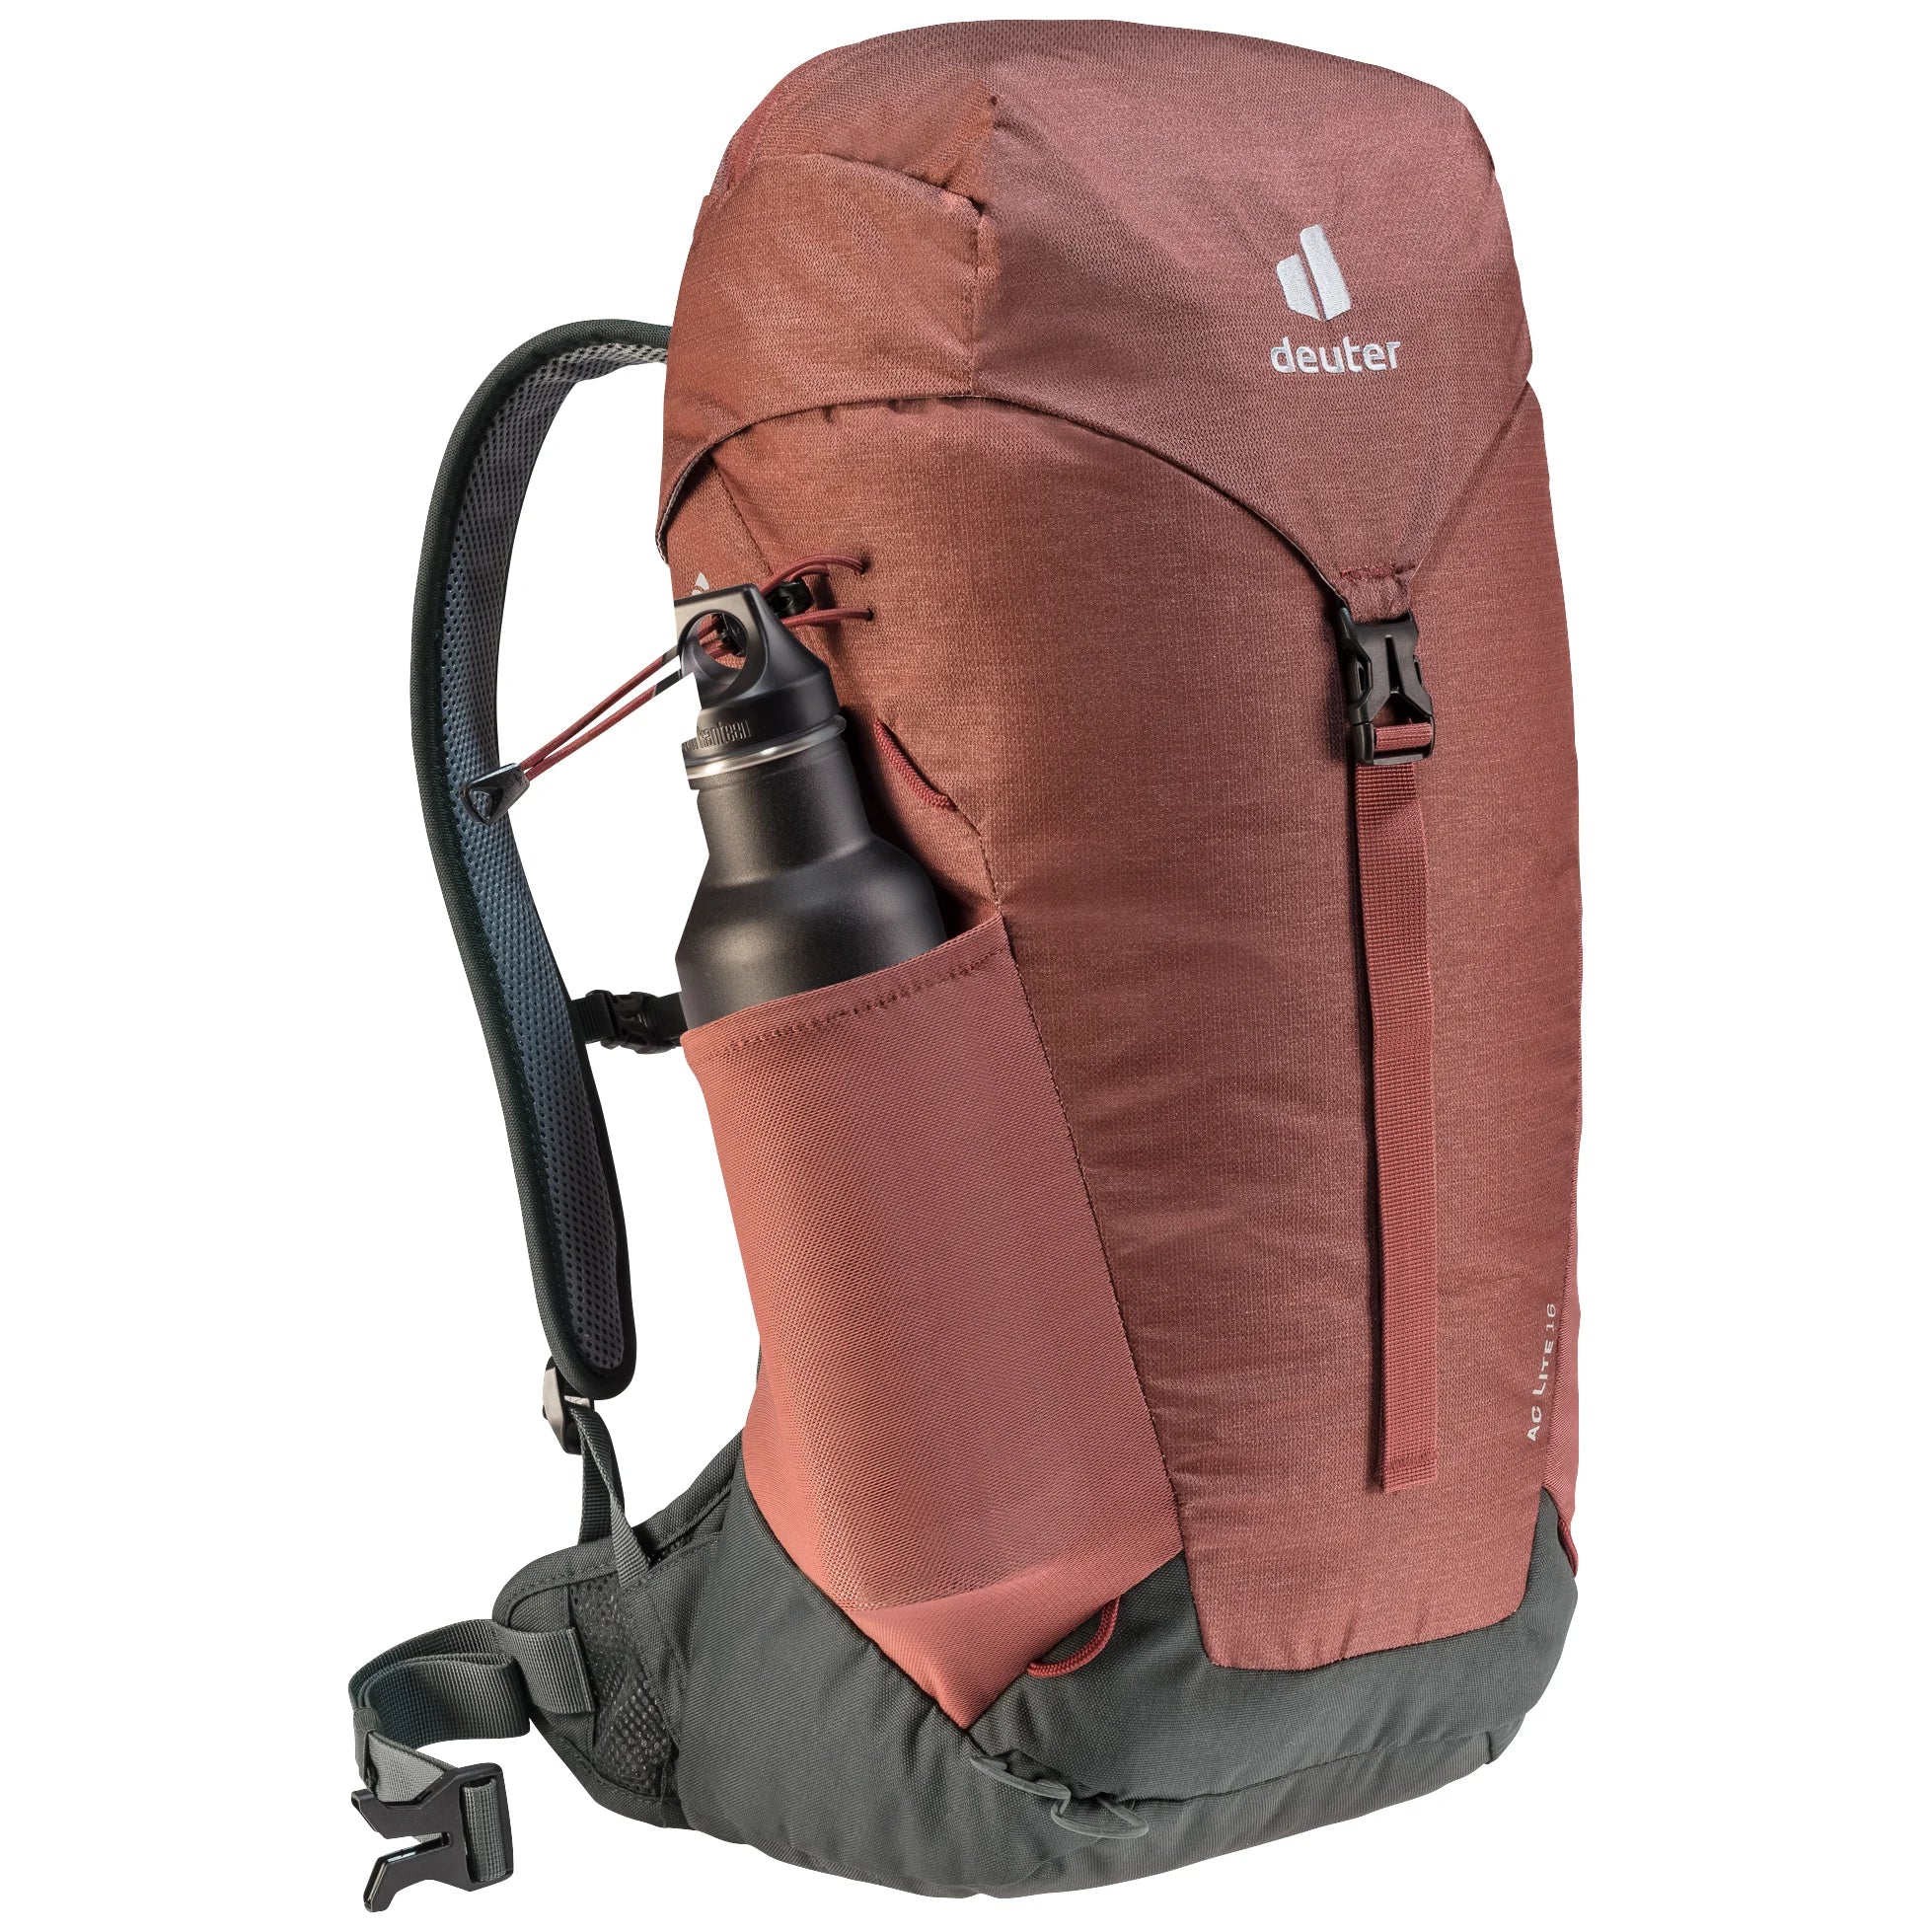 Deuter Travel AC Lite 16 hiking backpack 52 cm - Linden-Cactus